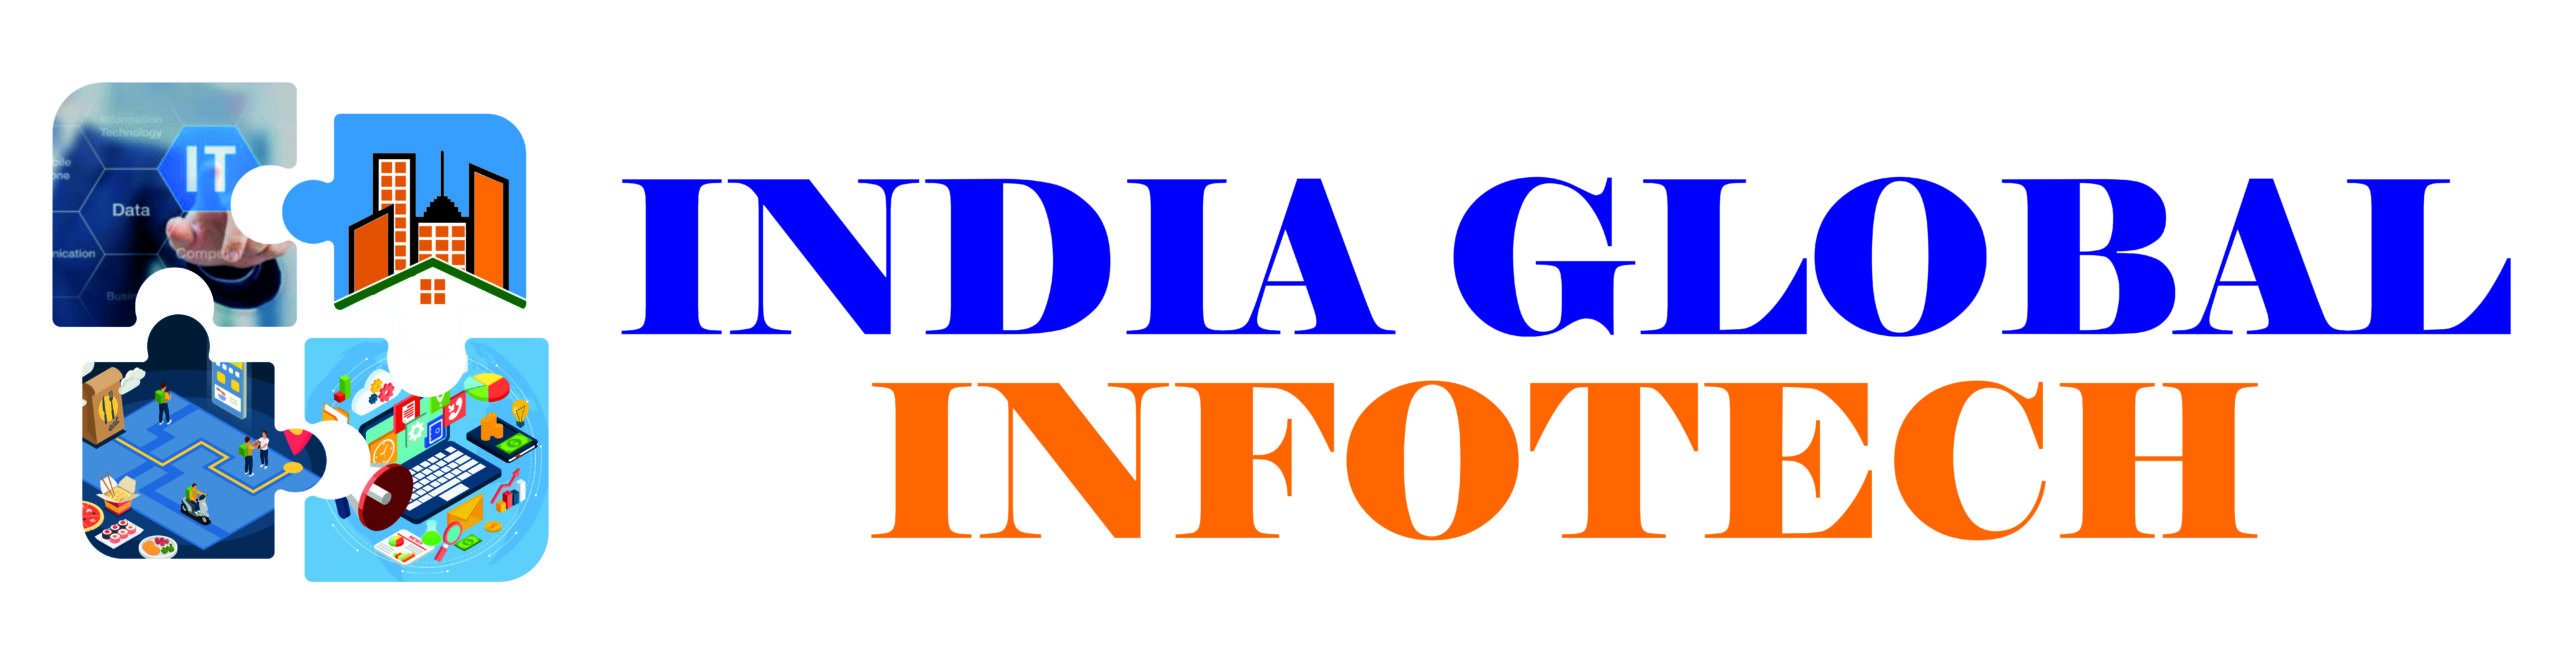 India Global Infotech